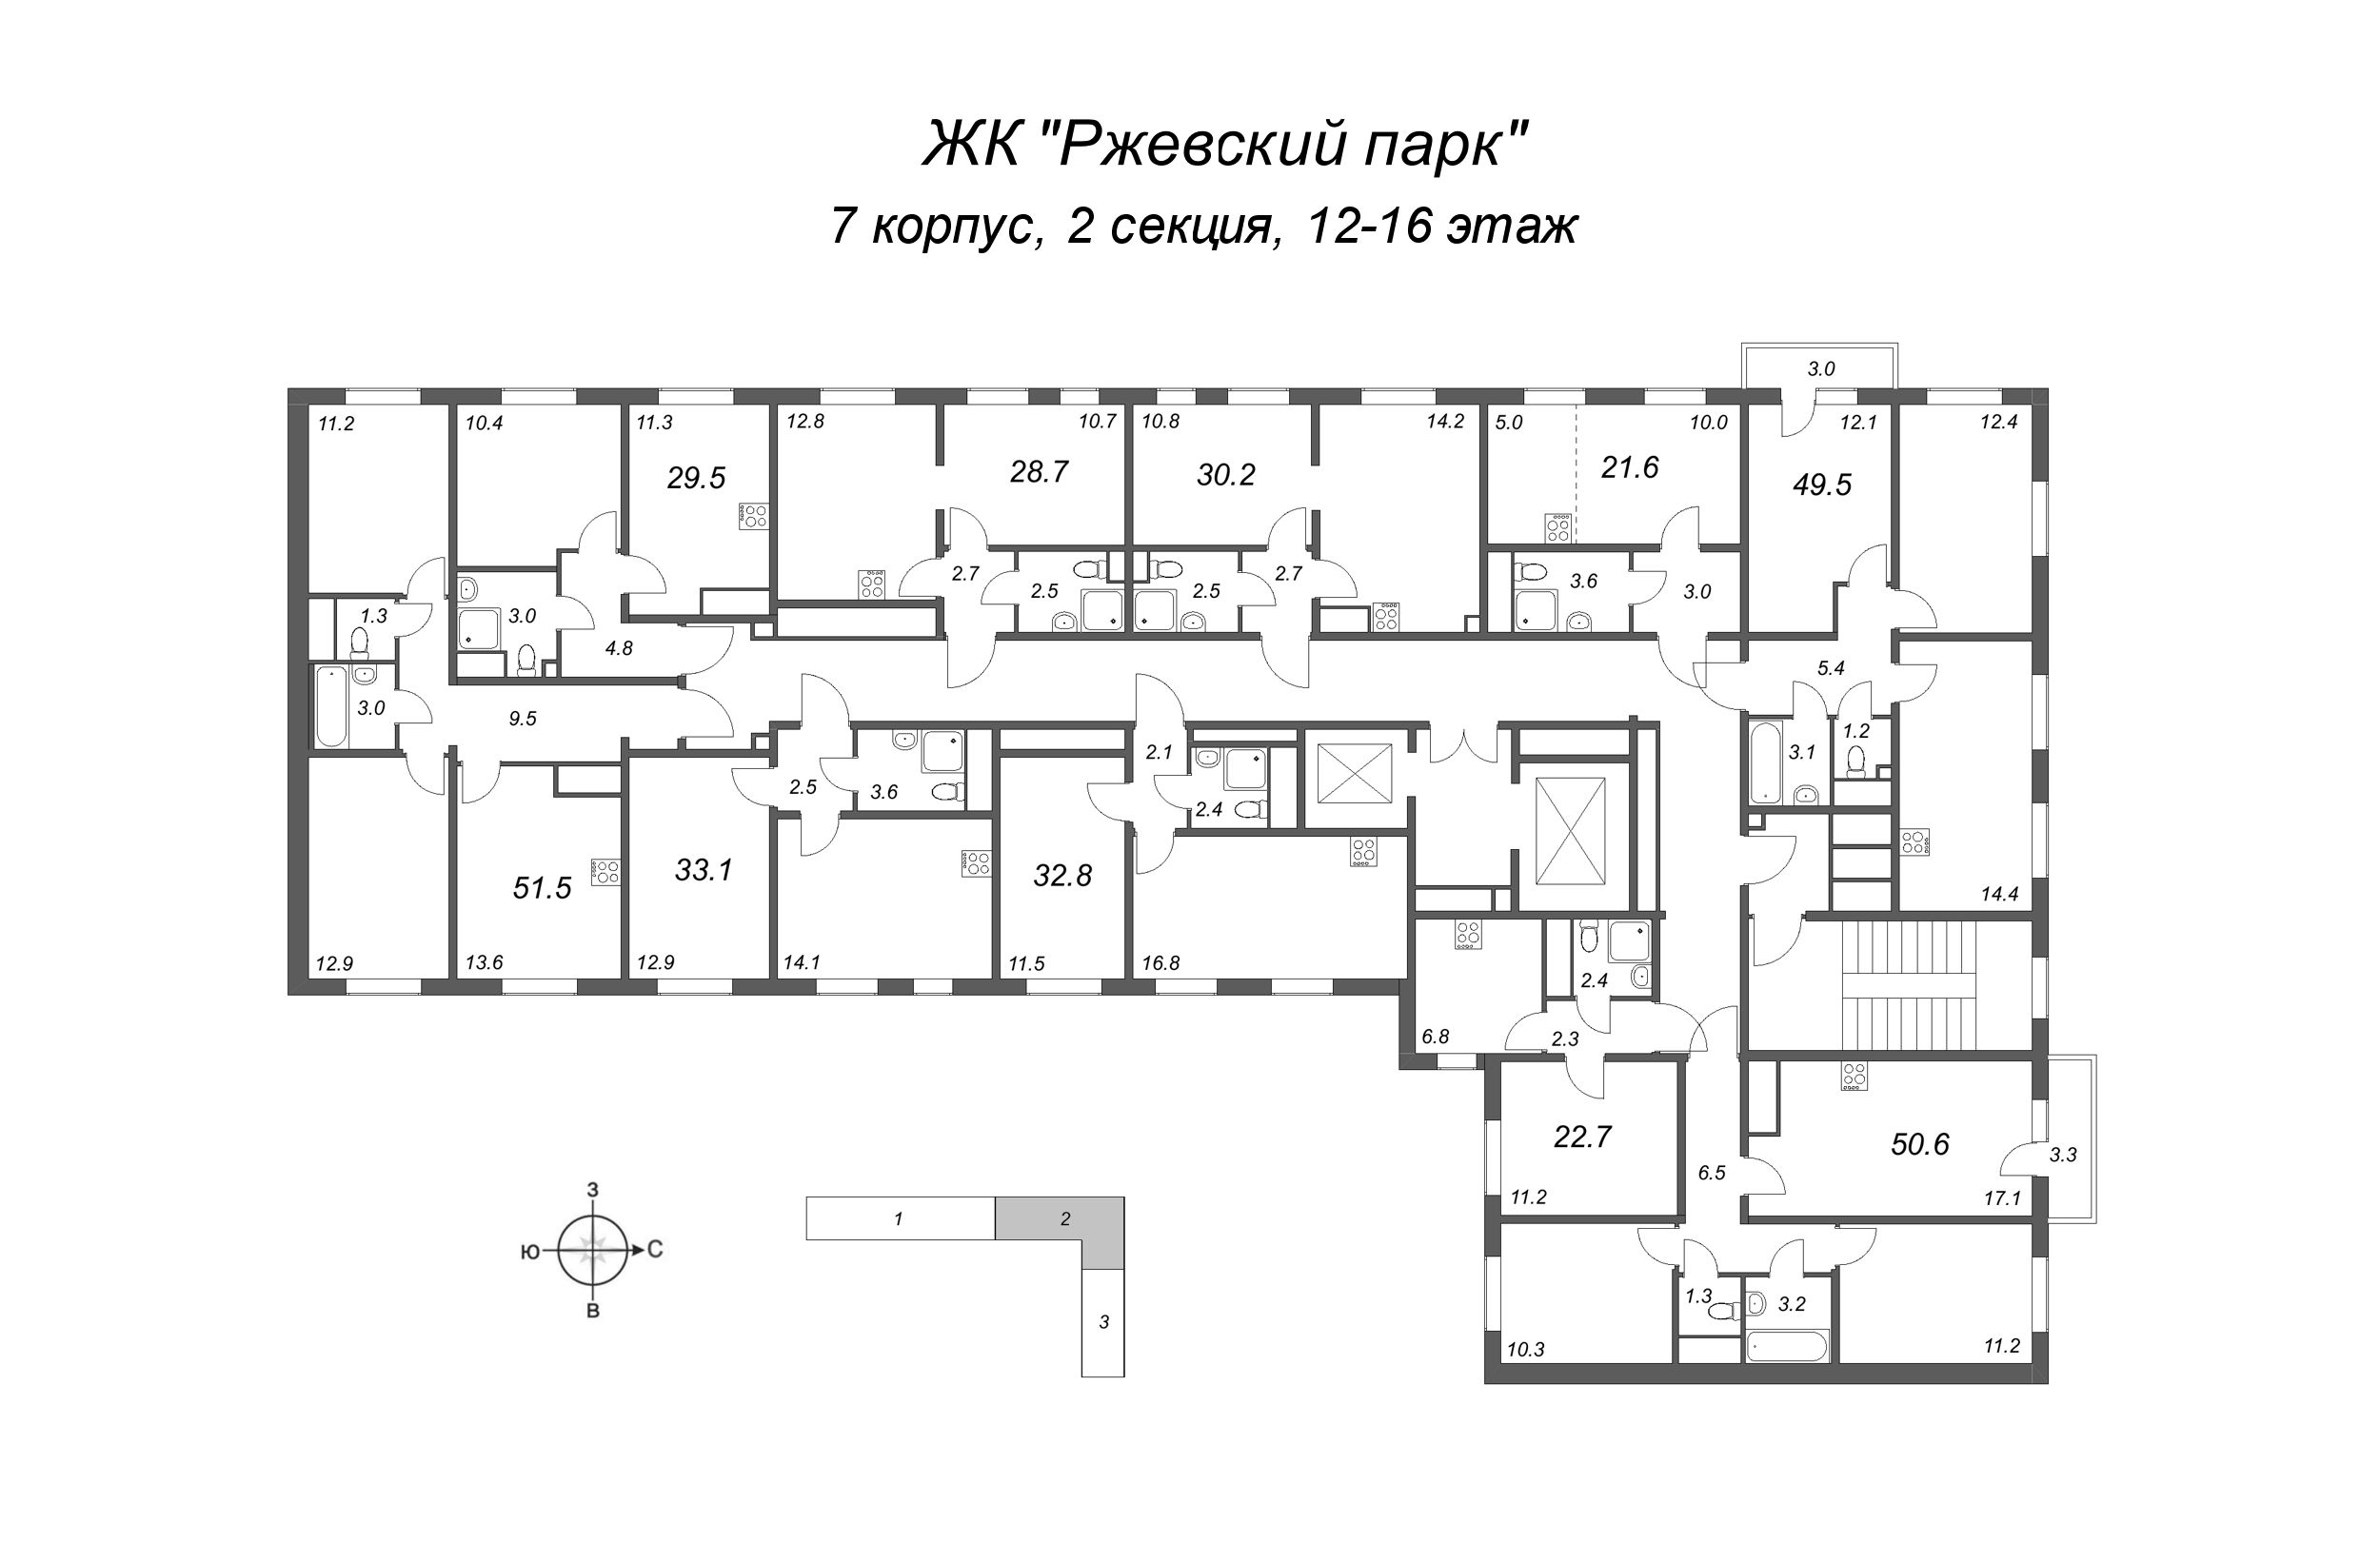 1-комнатная квартира, 28.7 м² в ЖК "ЛСР. Ржевский парк" - планировка этажа